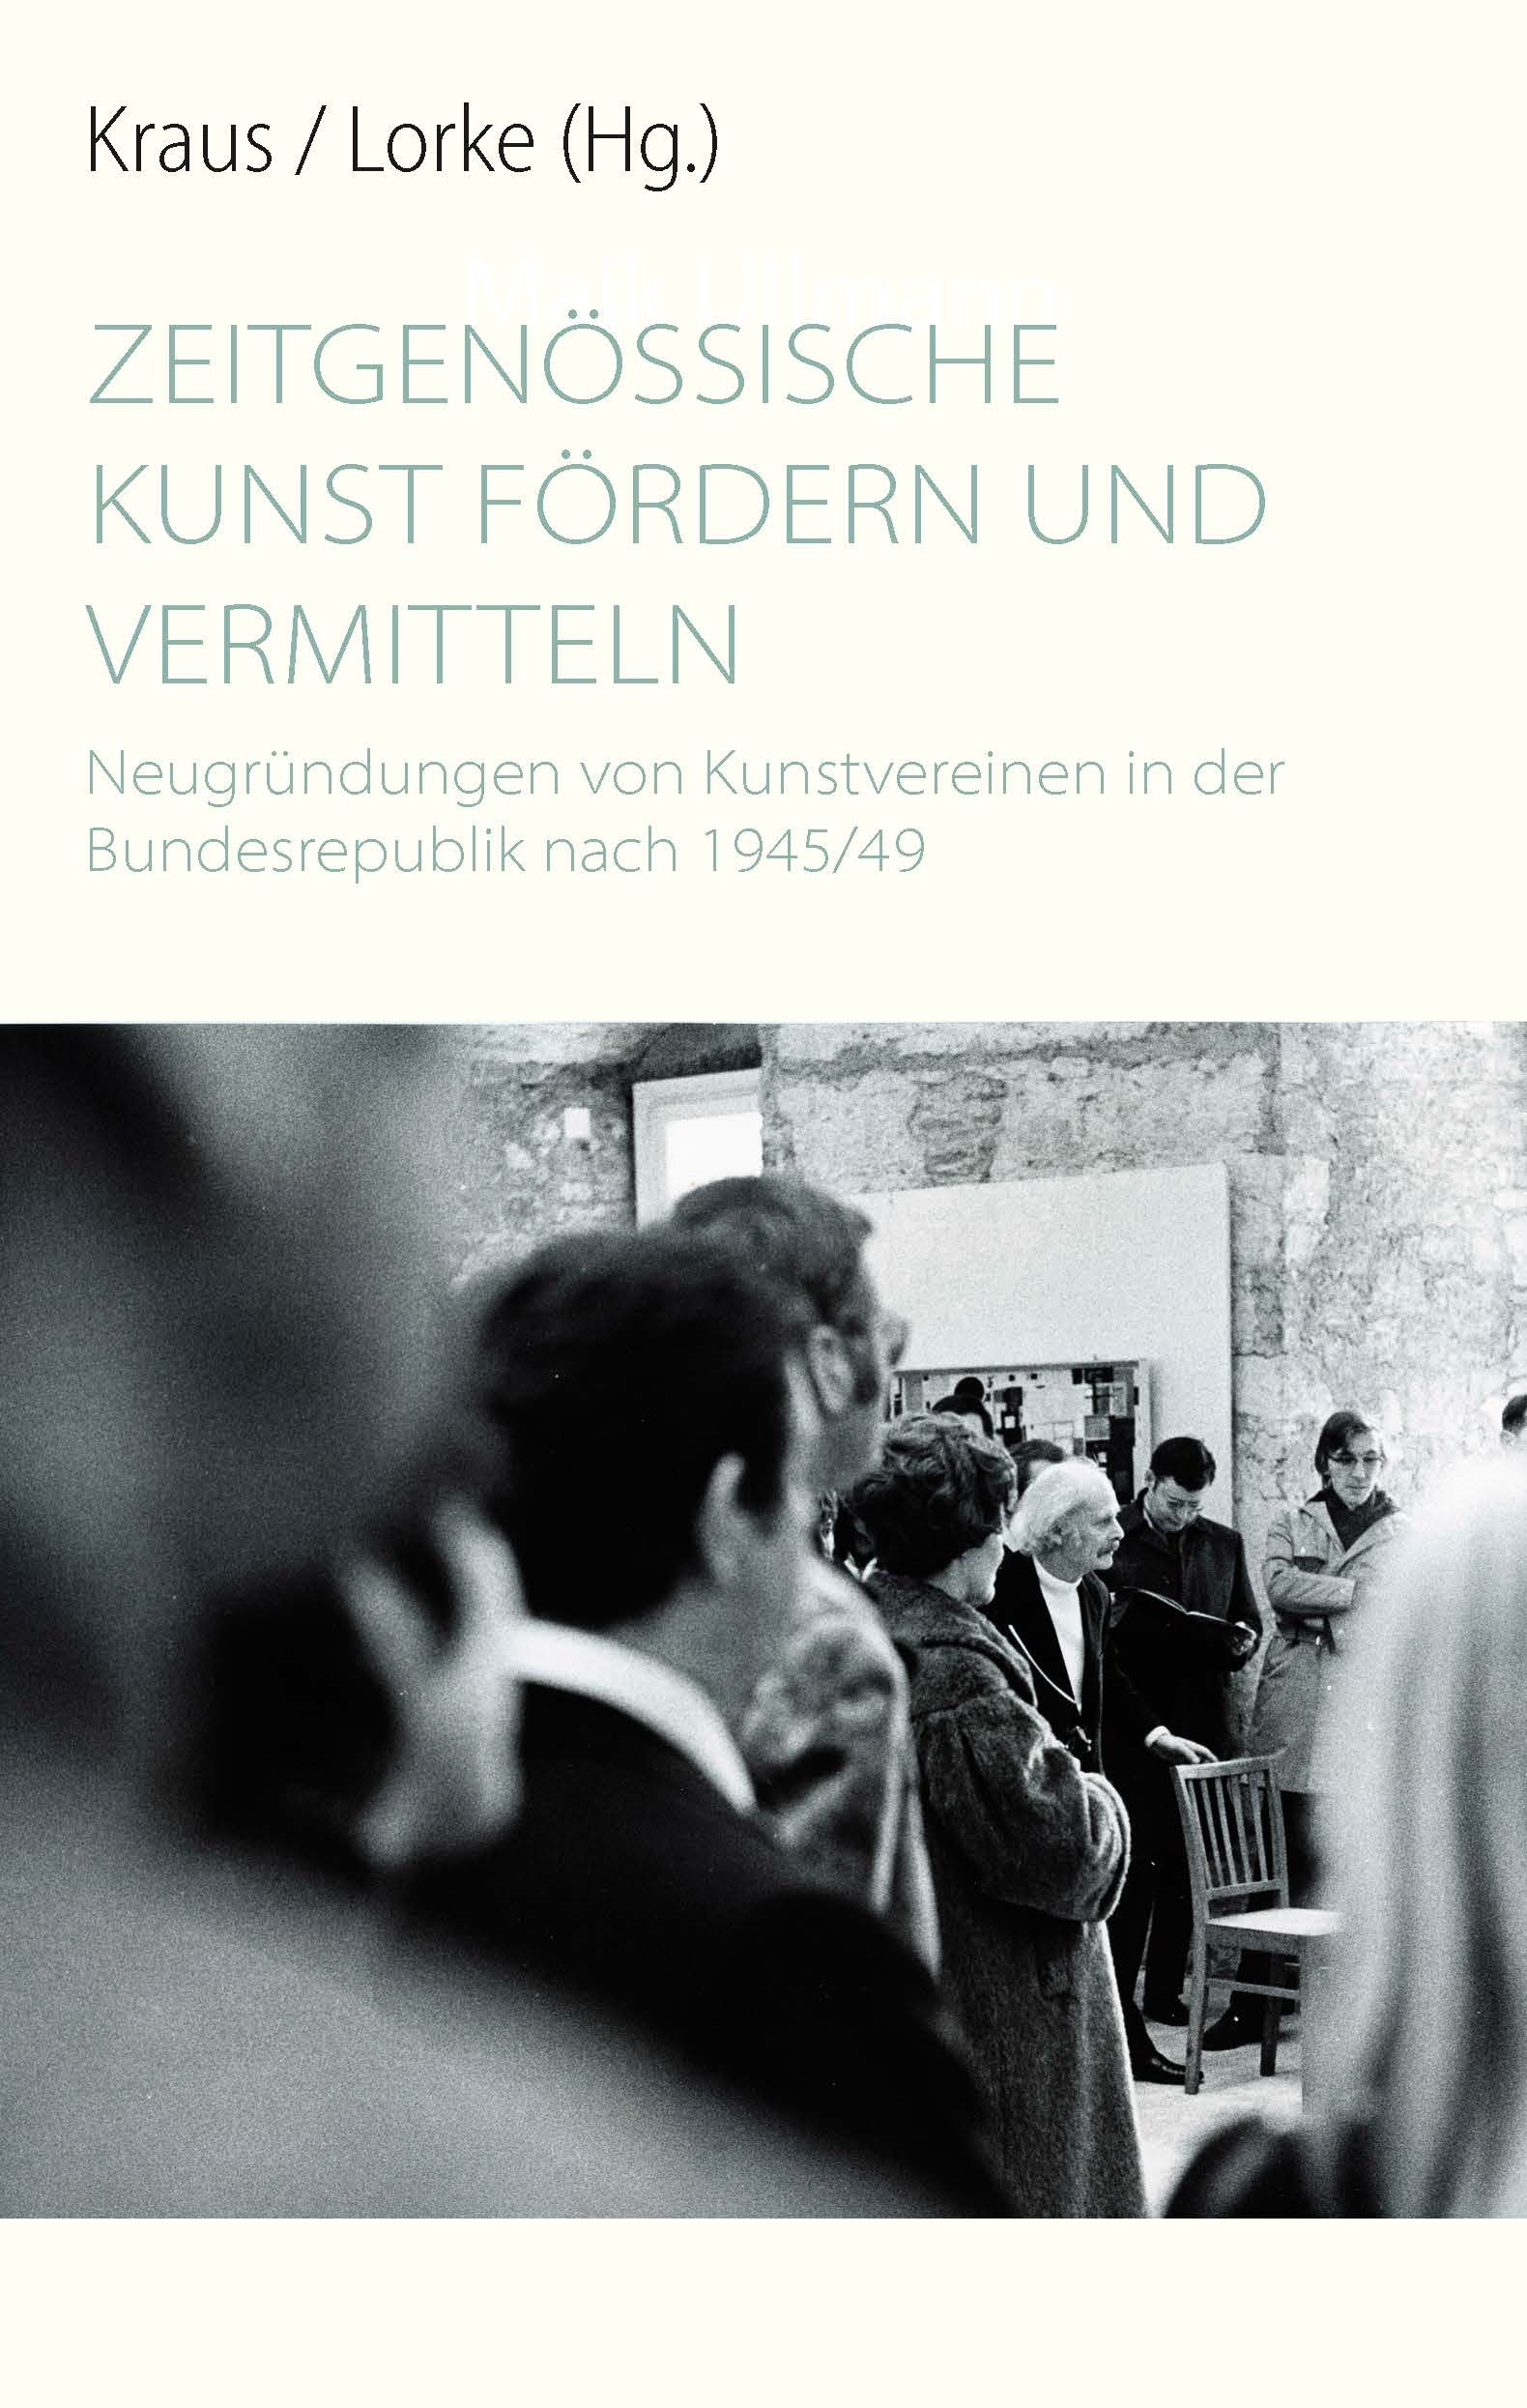 Title page of the book "Zeitgenössische Kunst fördern und vermitteln. New foundations of art associations in the Federal Republic after 1945/49"